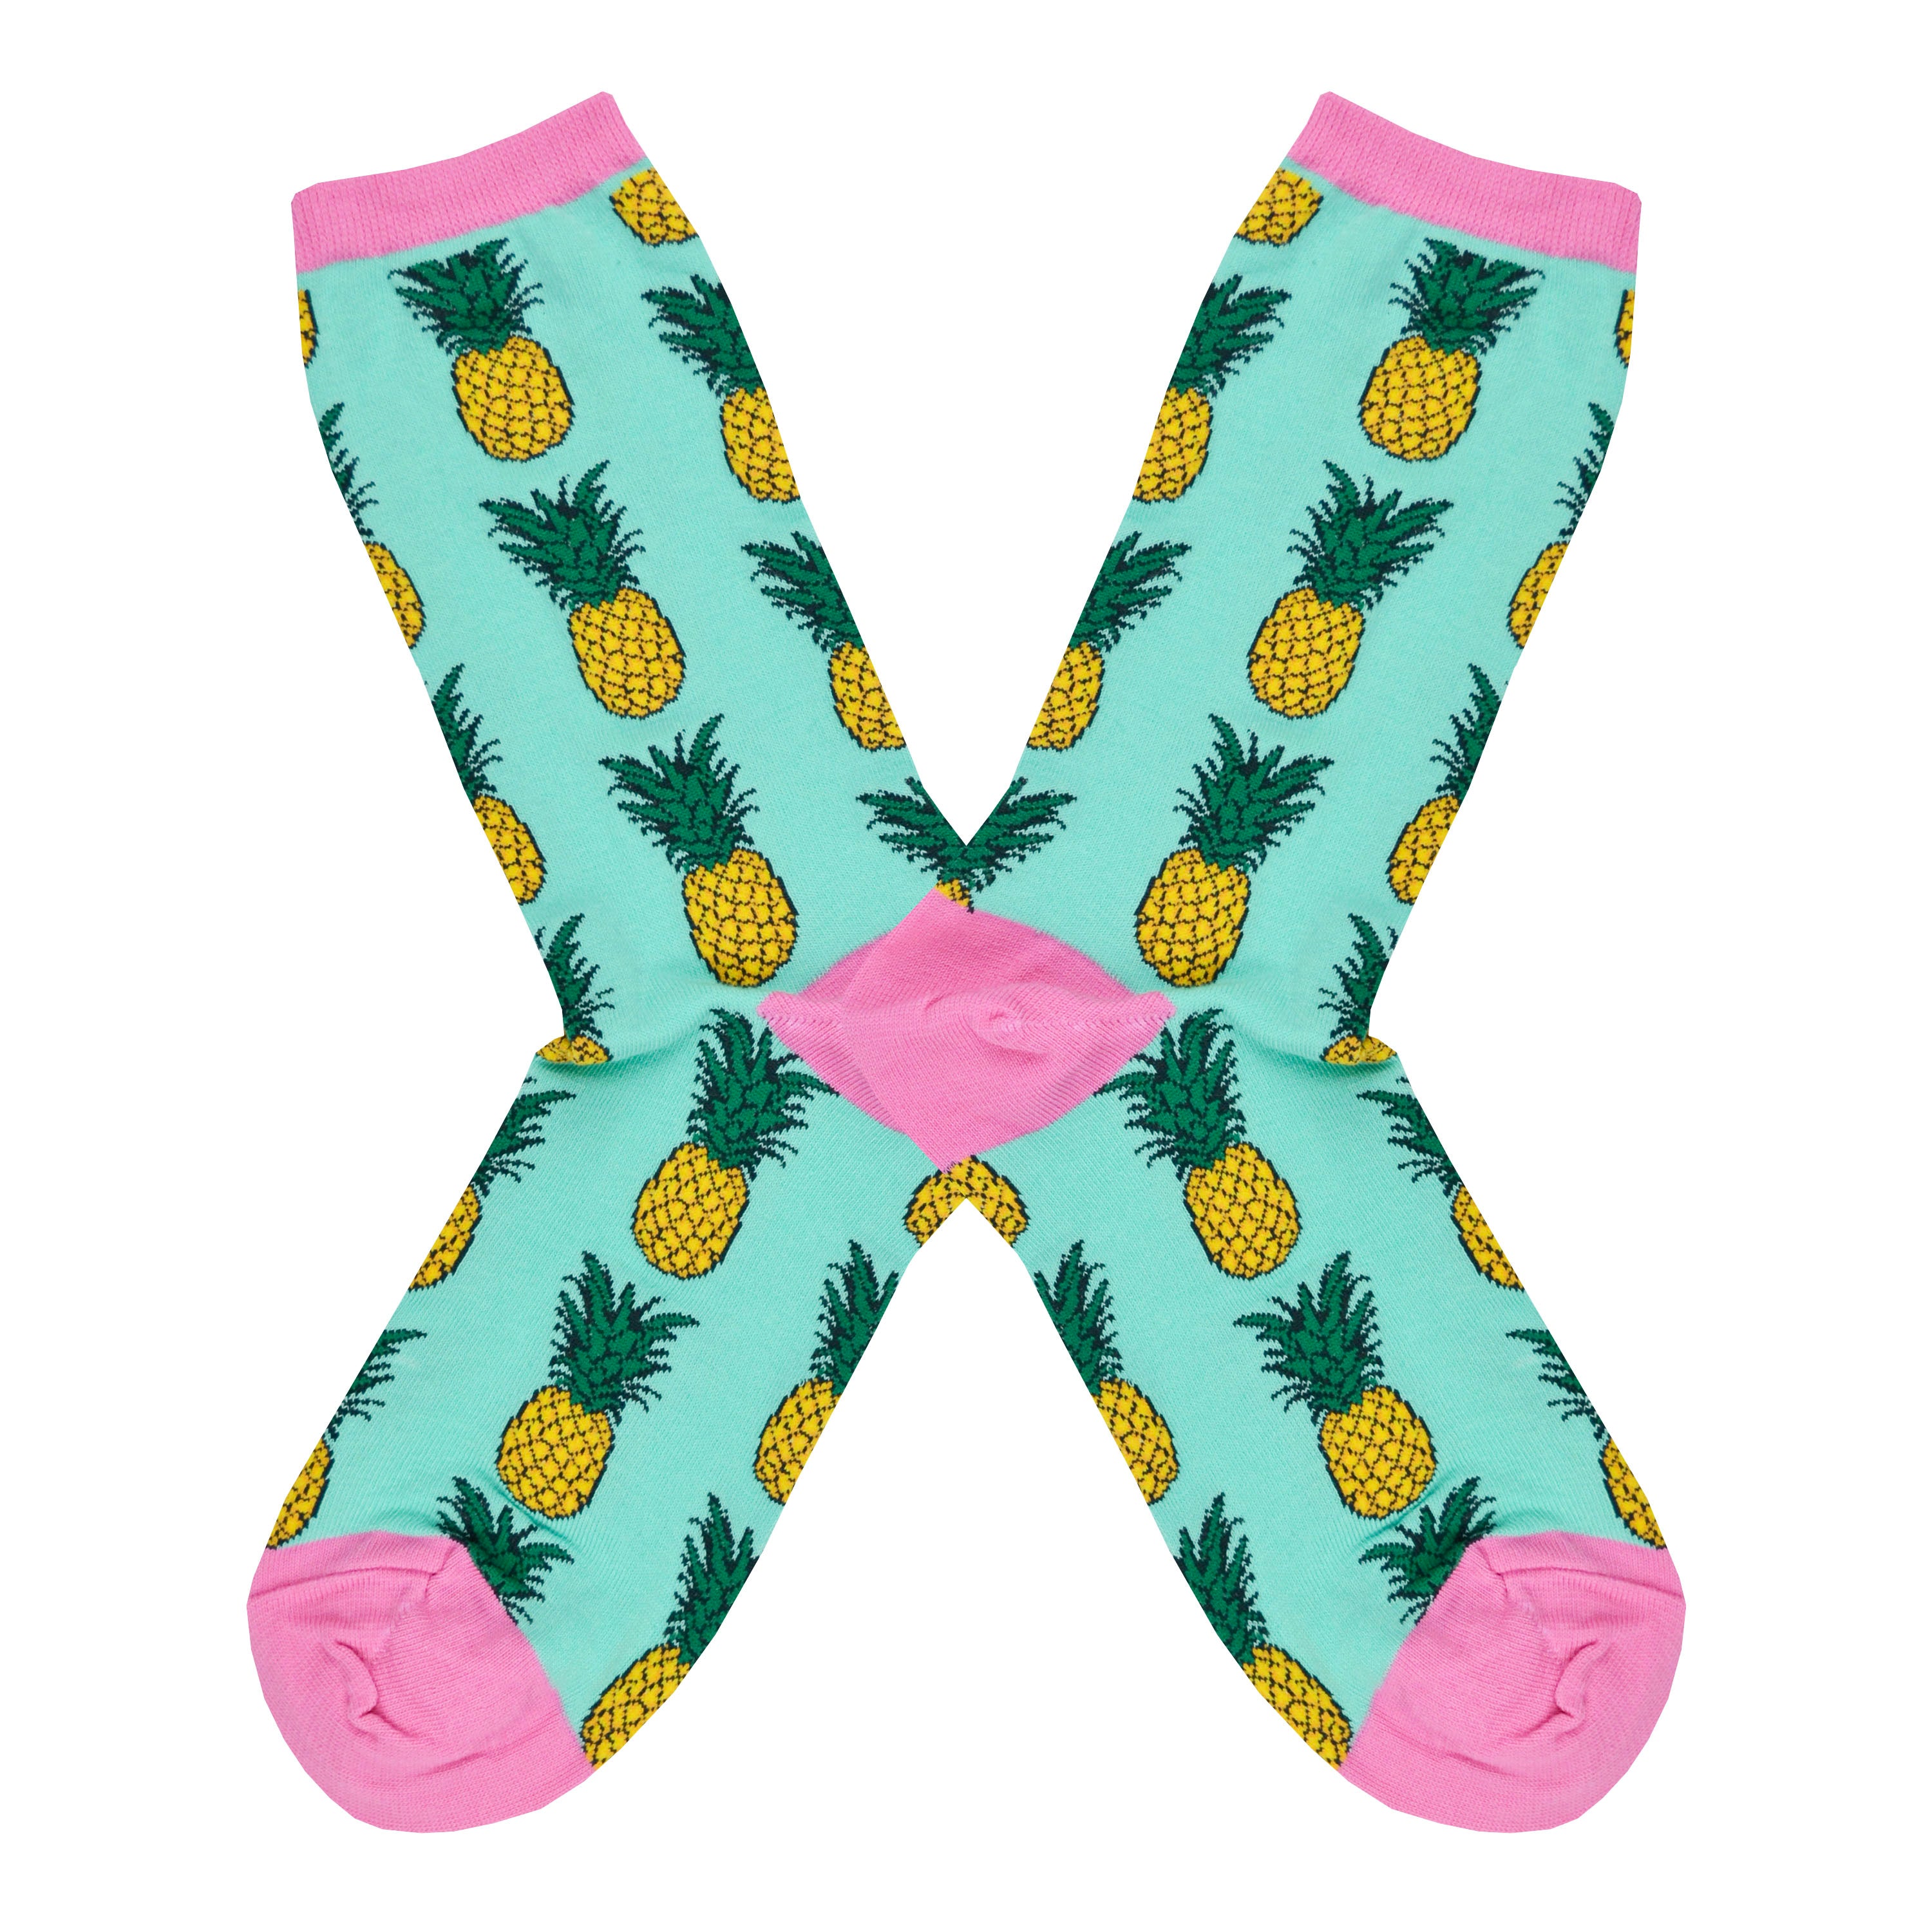 Women's Pineapple Socks